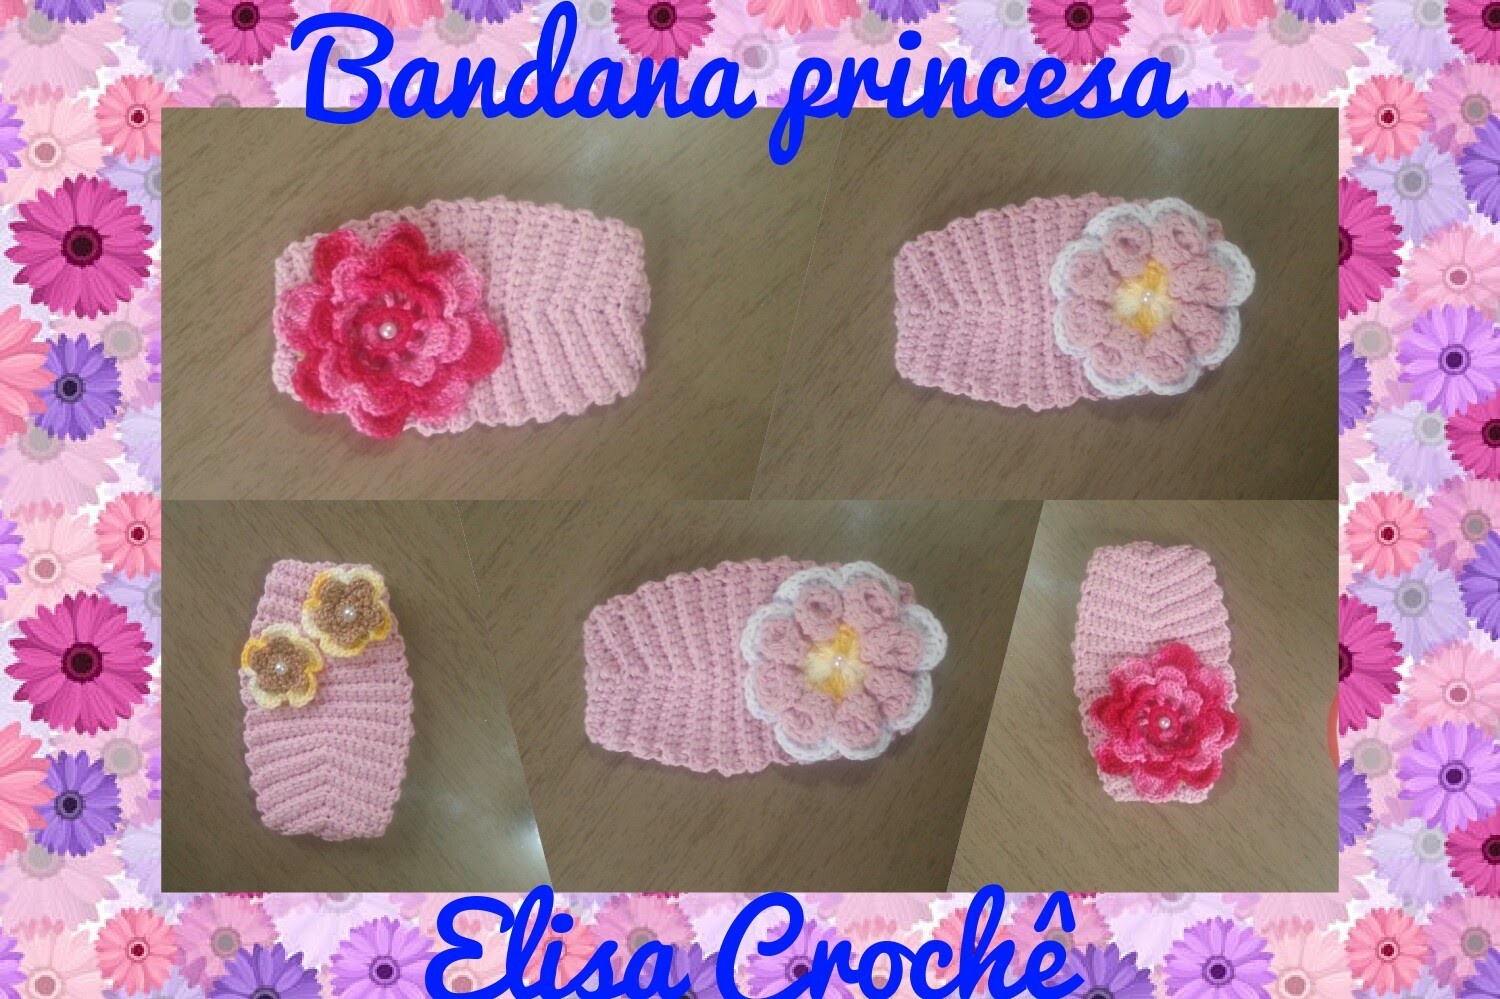 Versão canhotos : Bandana princesa em crochê # Elisa Crochê